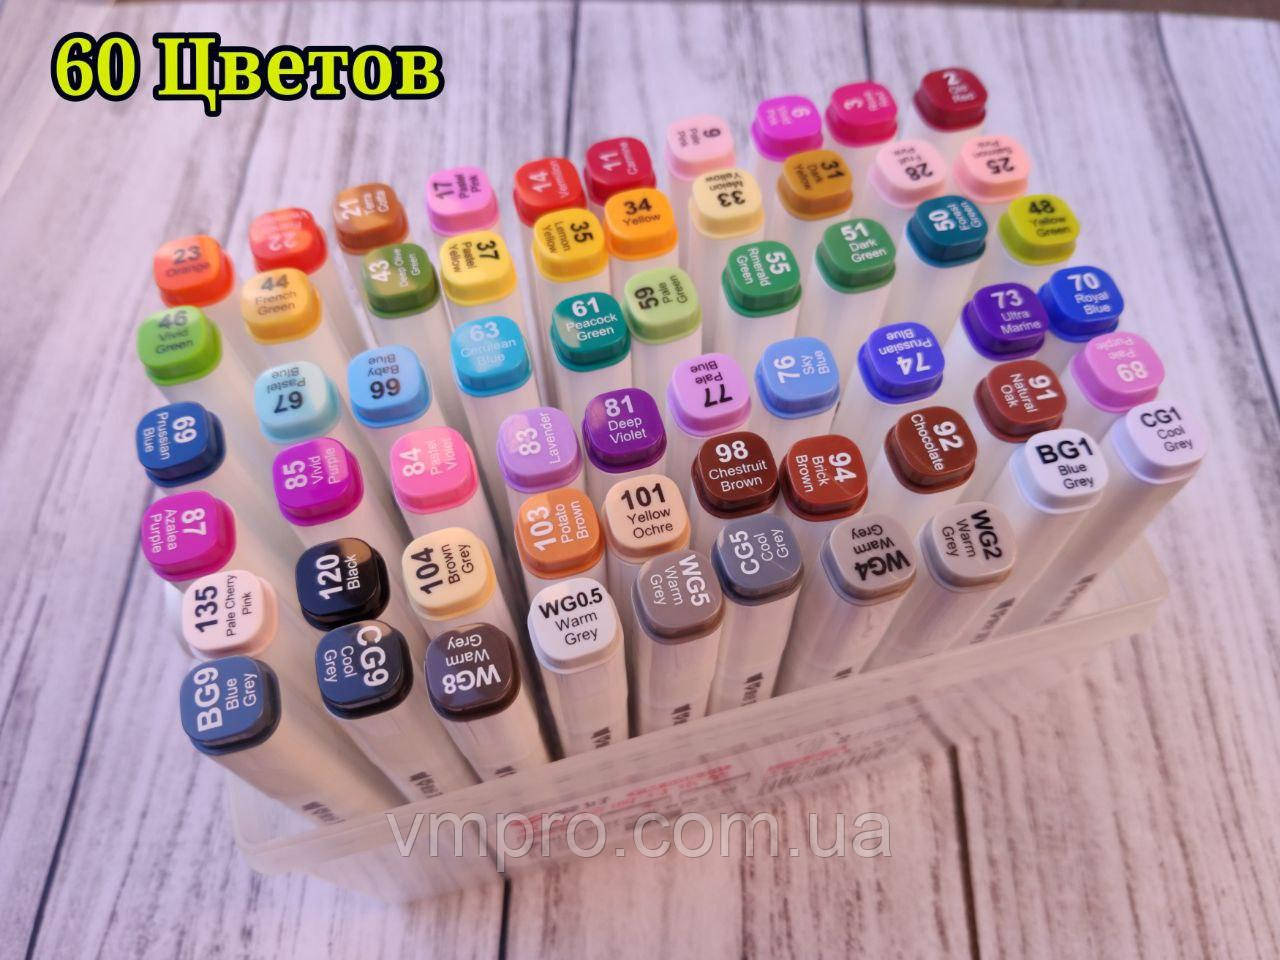 Скетч маркеры "Sketch marcer" набор 60 цветов, Aihao набор в пластиковом боксе.